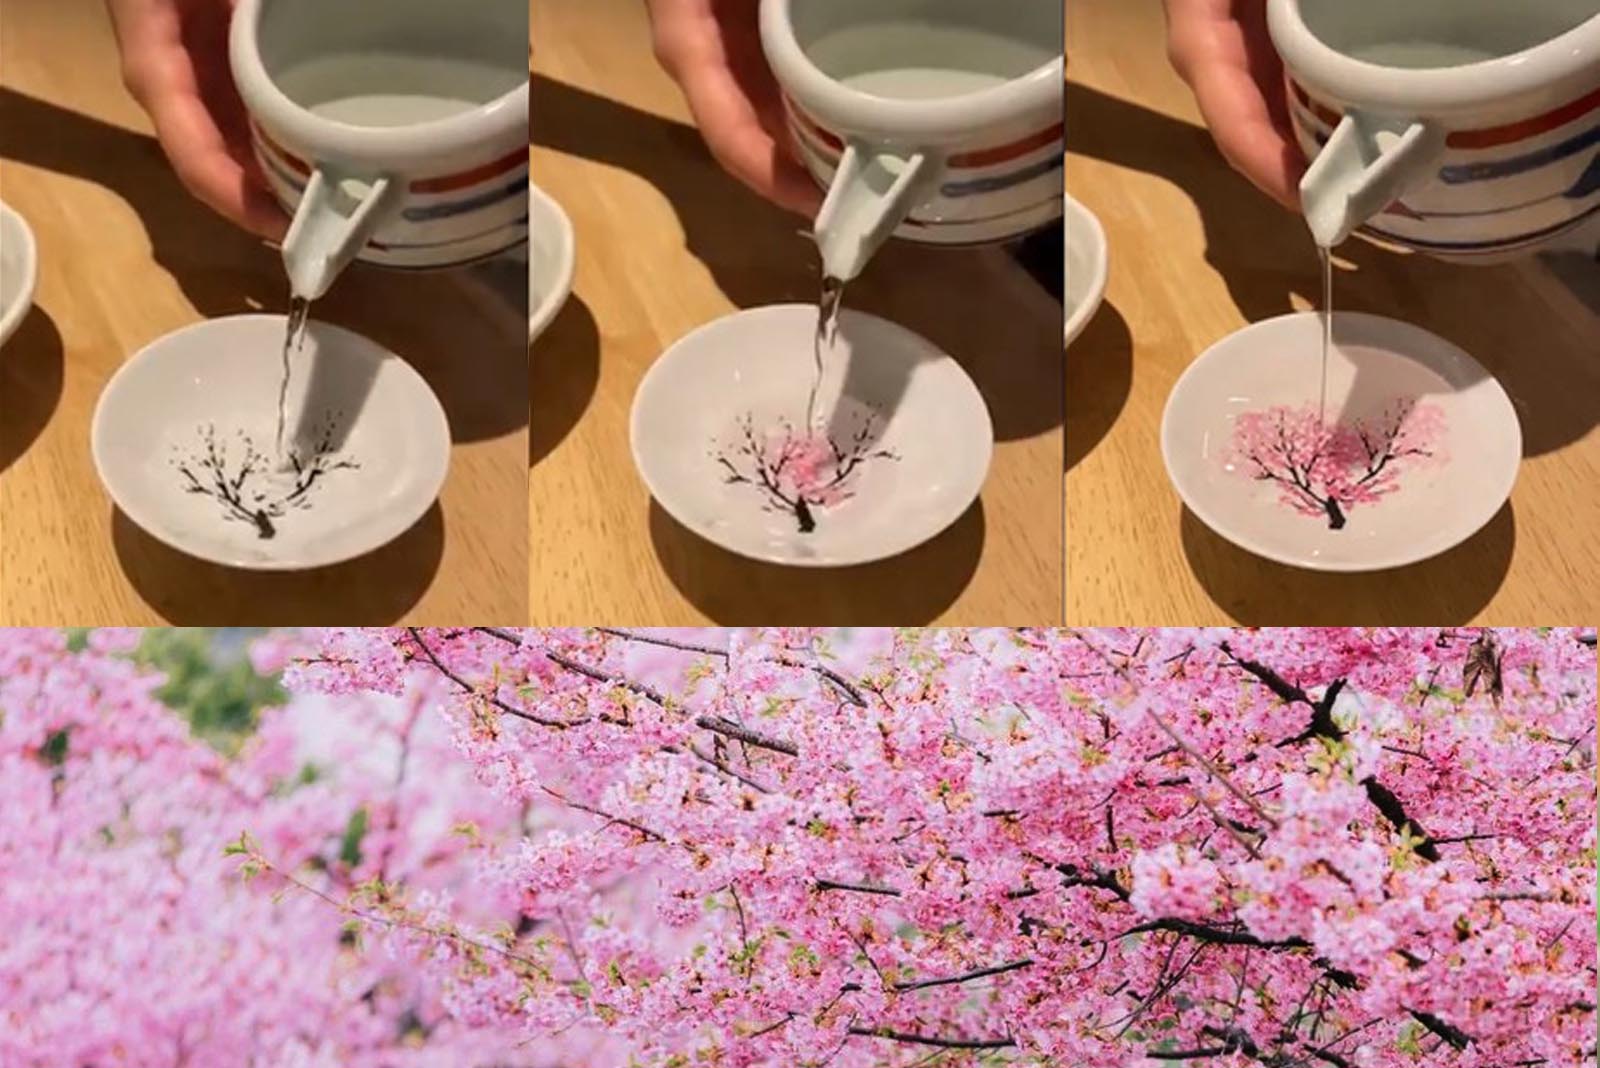 BNIB Black Cherry Blossom Design Porcelain Sake Set Bottle & Four Cups 